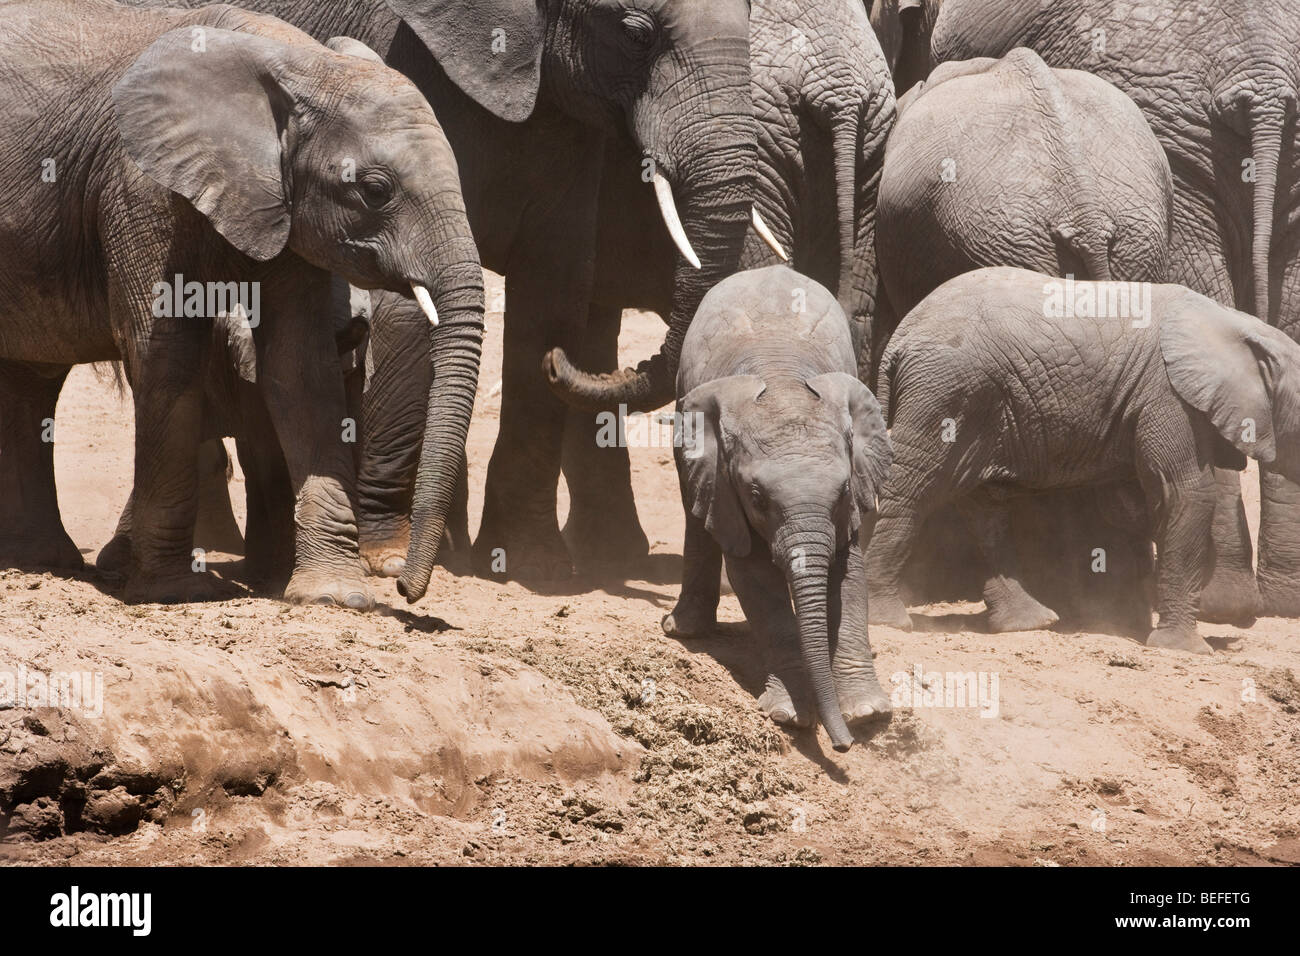 Funny Baby elefante africano banco río abajo deslizante fomentado por la familia, mamá le echa una mano con el tronco por detrás, el Maasai Mara de Kenia Foto de stock